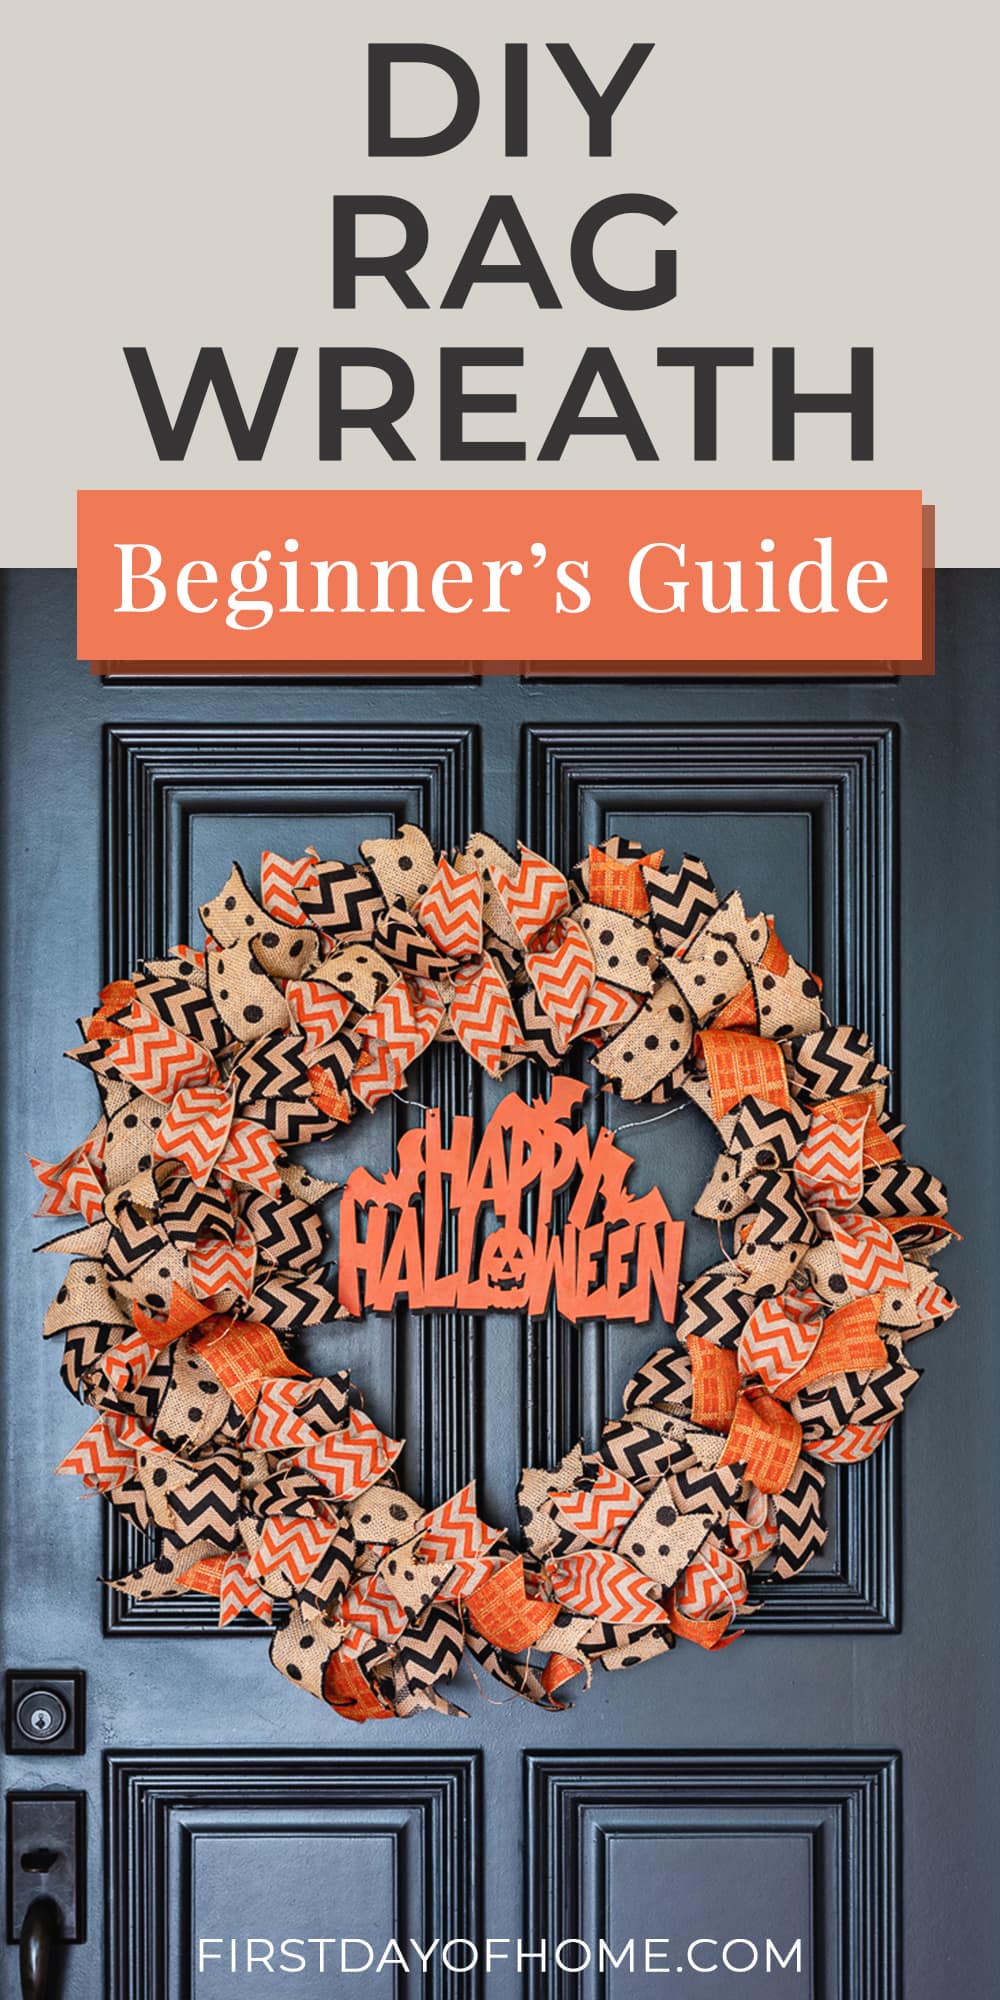 Halloween rag wreath with wooden insert that says "Happy Halloween" hanging on front door. Text overlay says "DIY rag wreath beginner's guide."